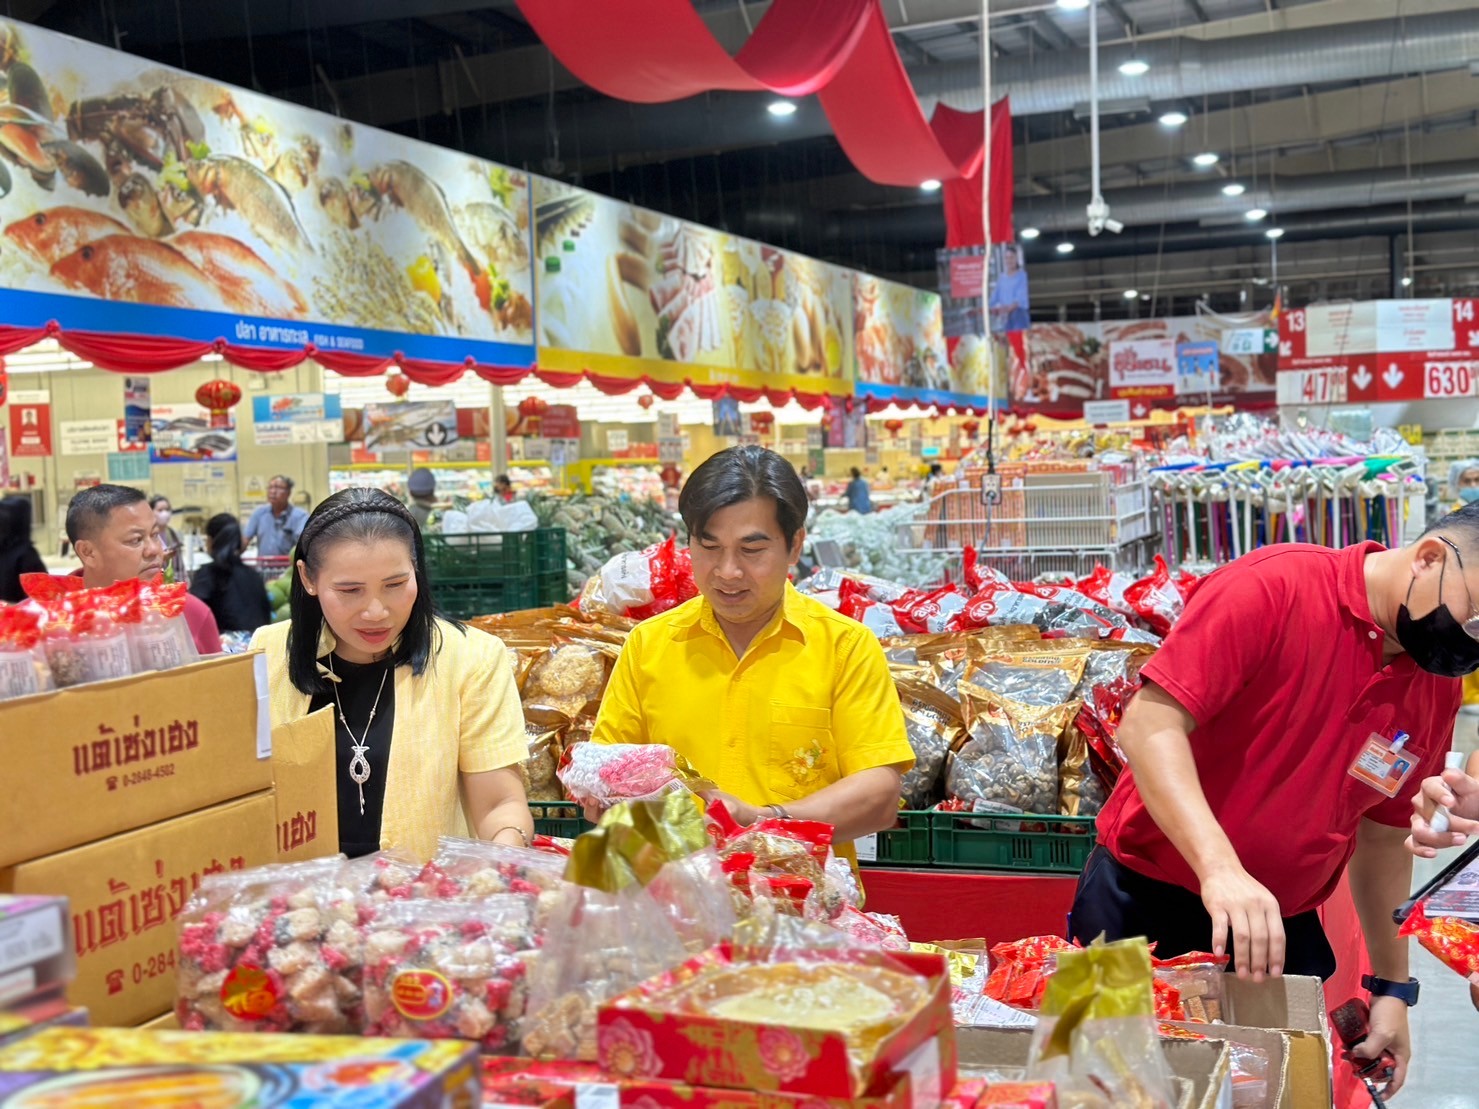 สำนักงานพาณิชย์จังหวัดมุกดาหาร ลงพื้นที่ตรวจราคาสินค้าช่วงเทศกาลตรุษจีน